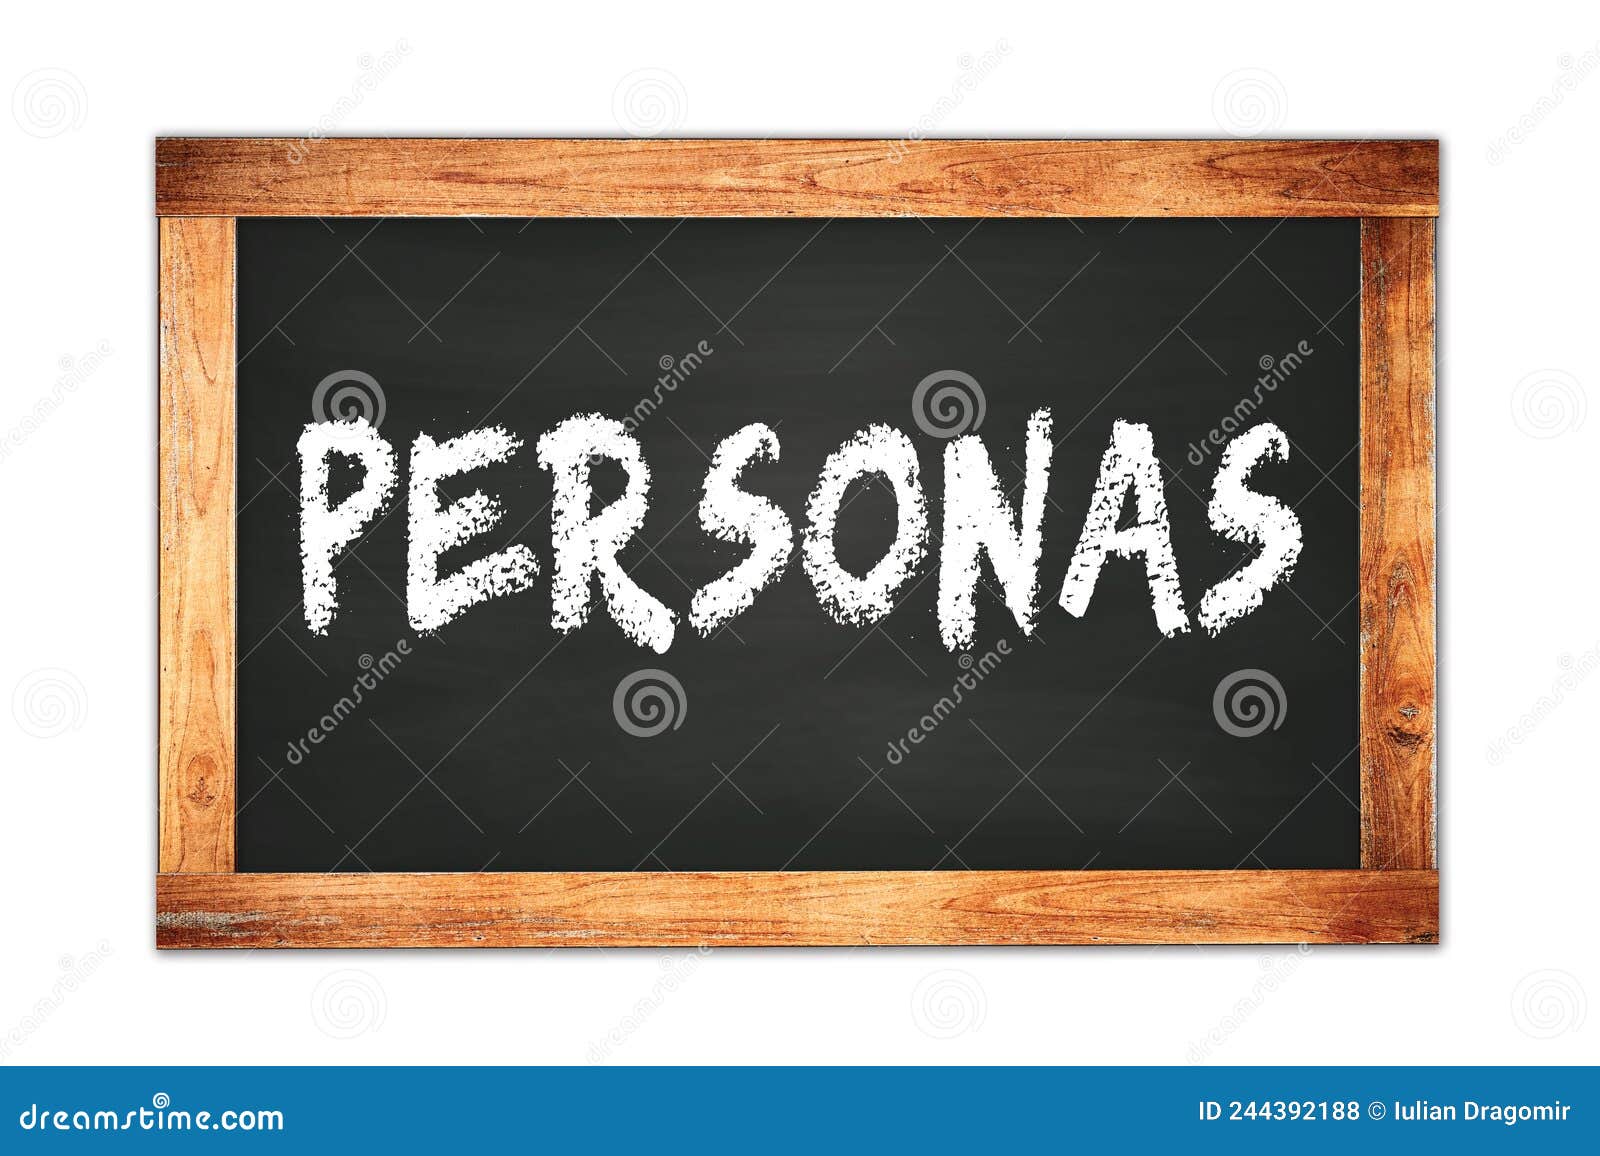 personas text written on wooden frame school blackboard